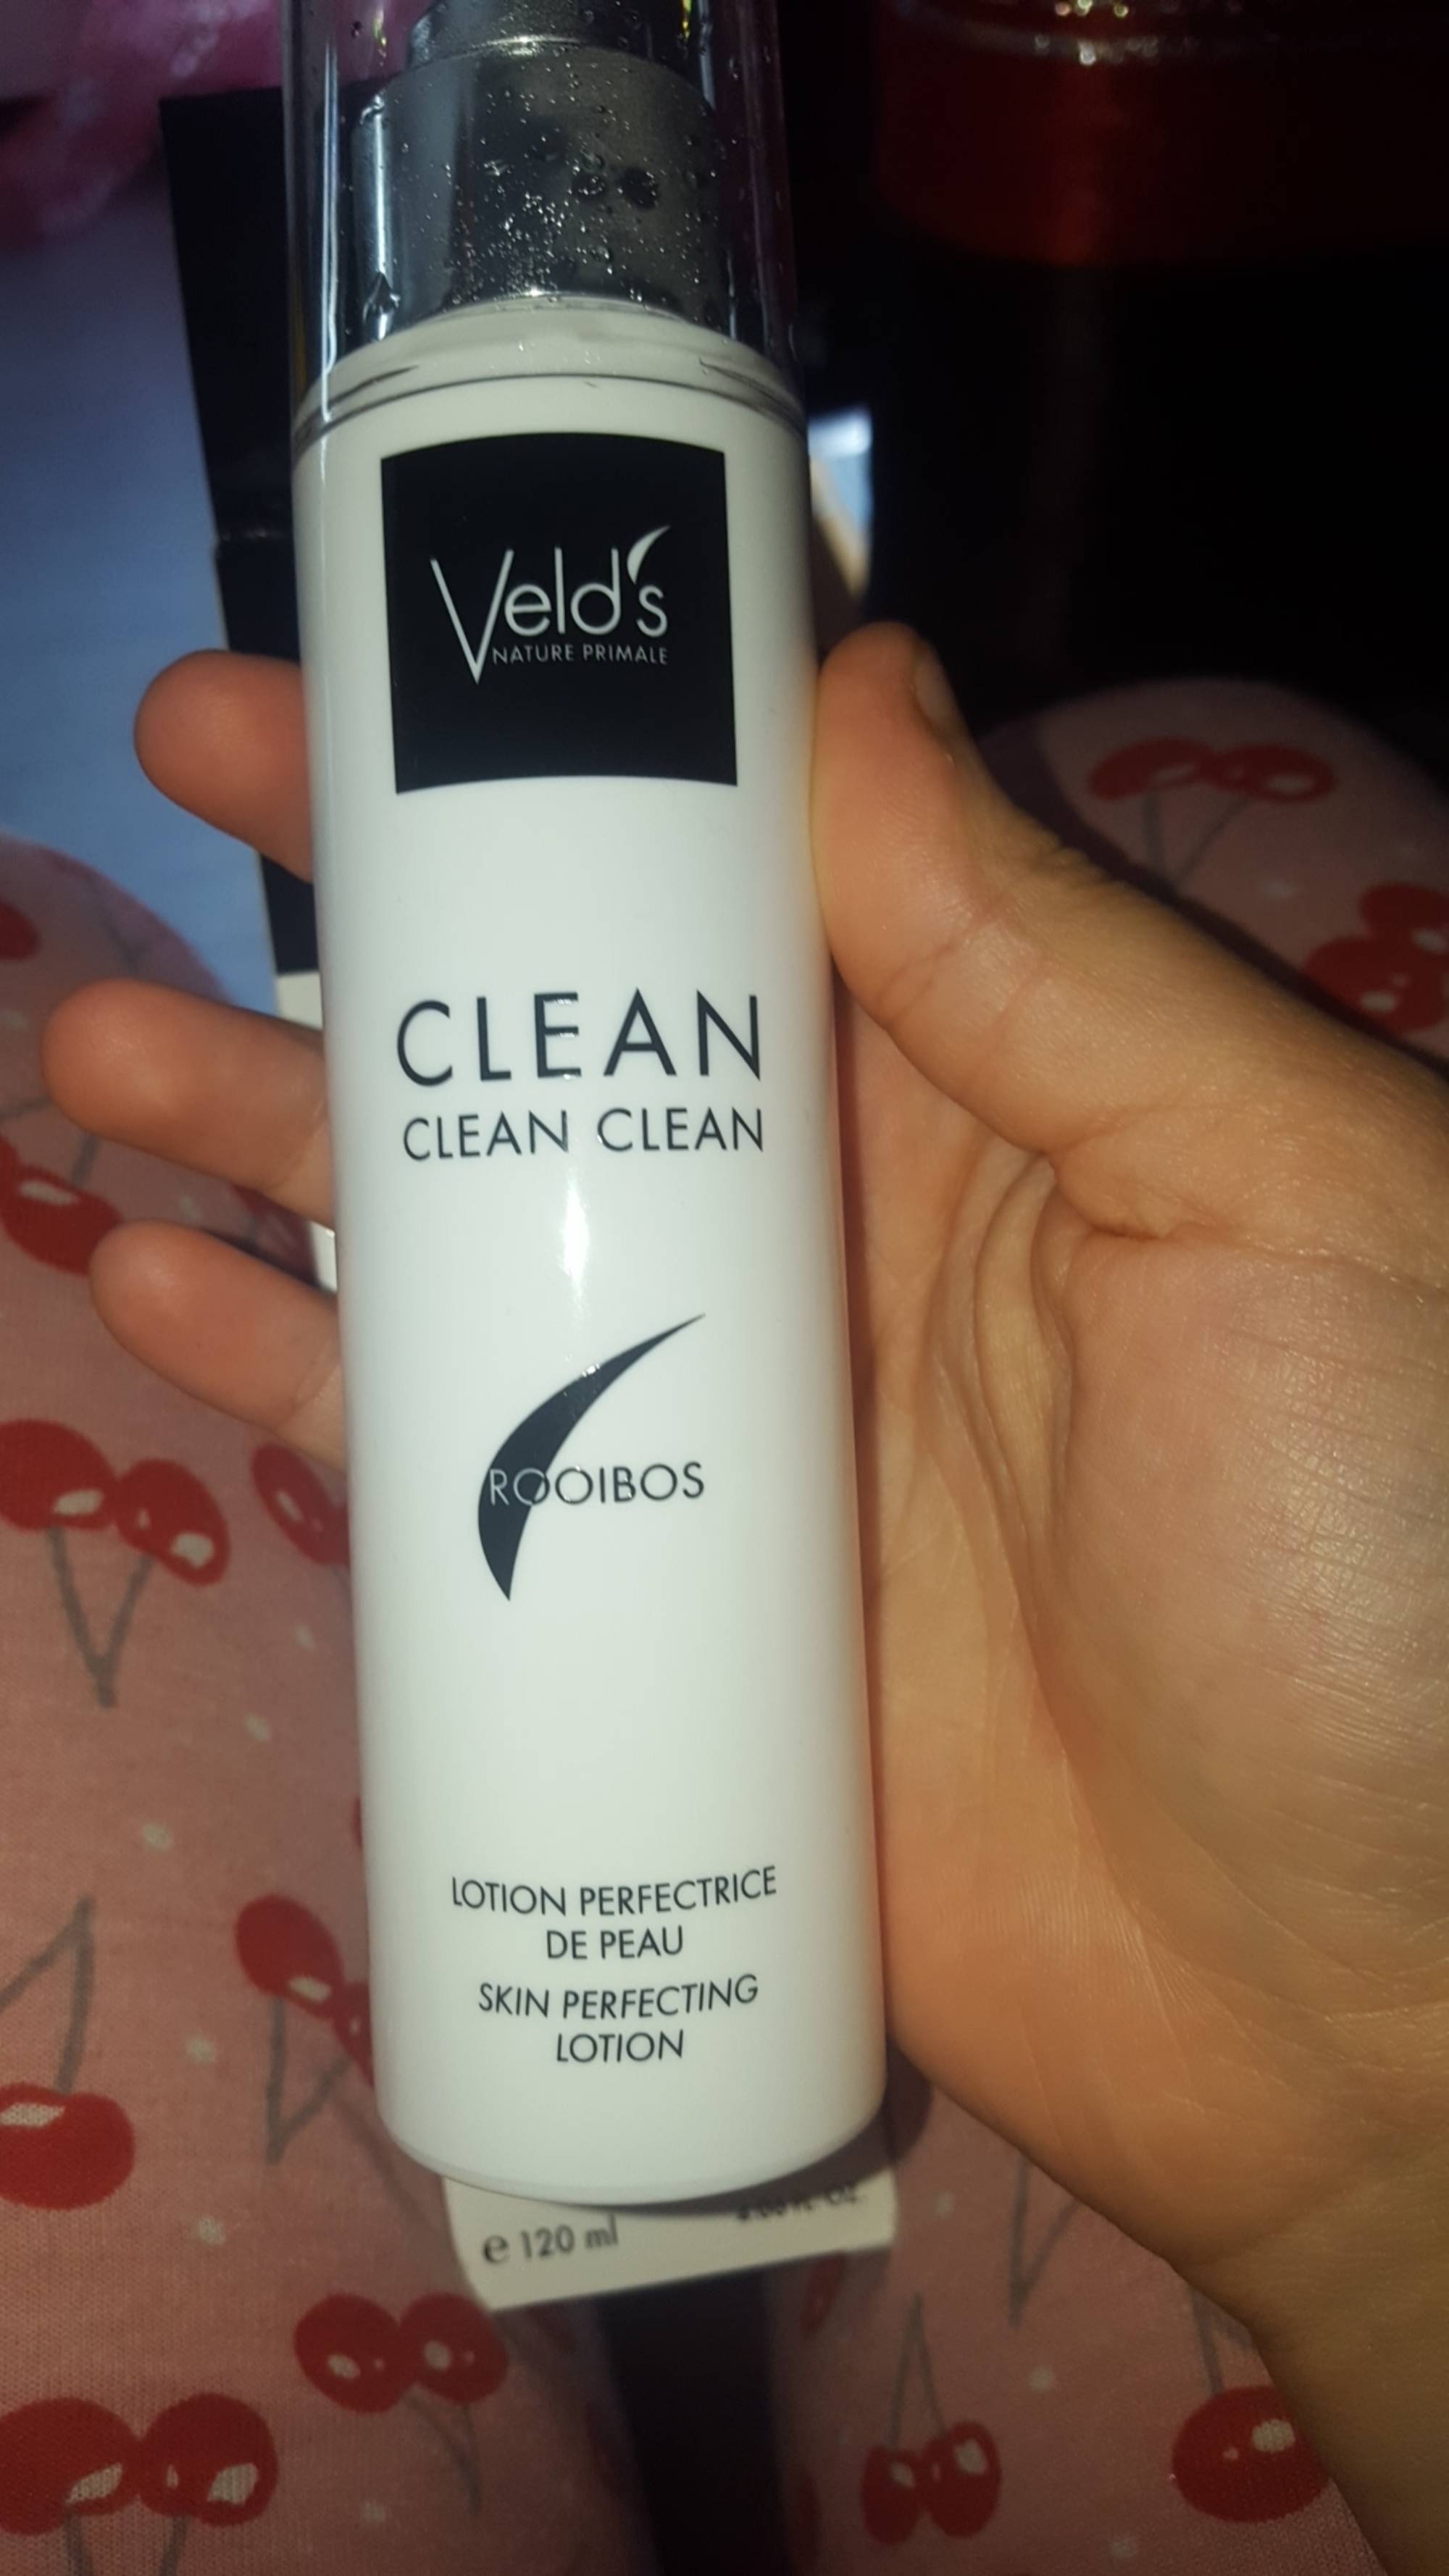 VELD'S - Clean clean clean - Lotion perfectrice de peau